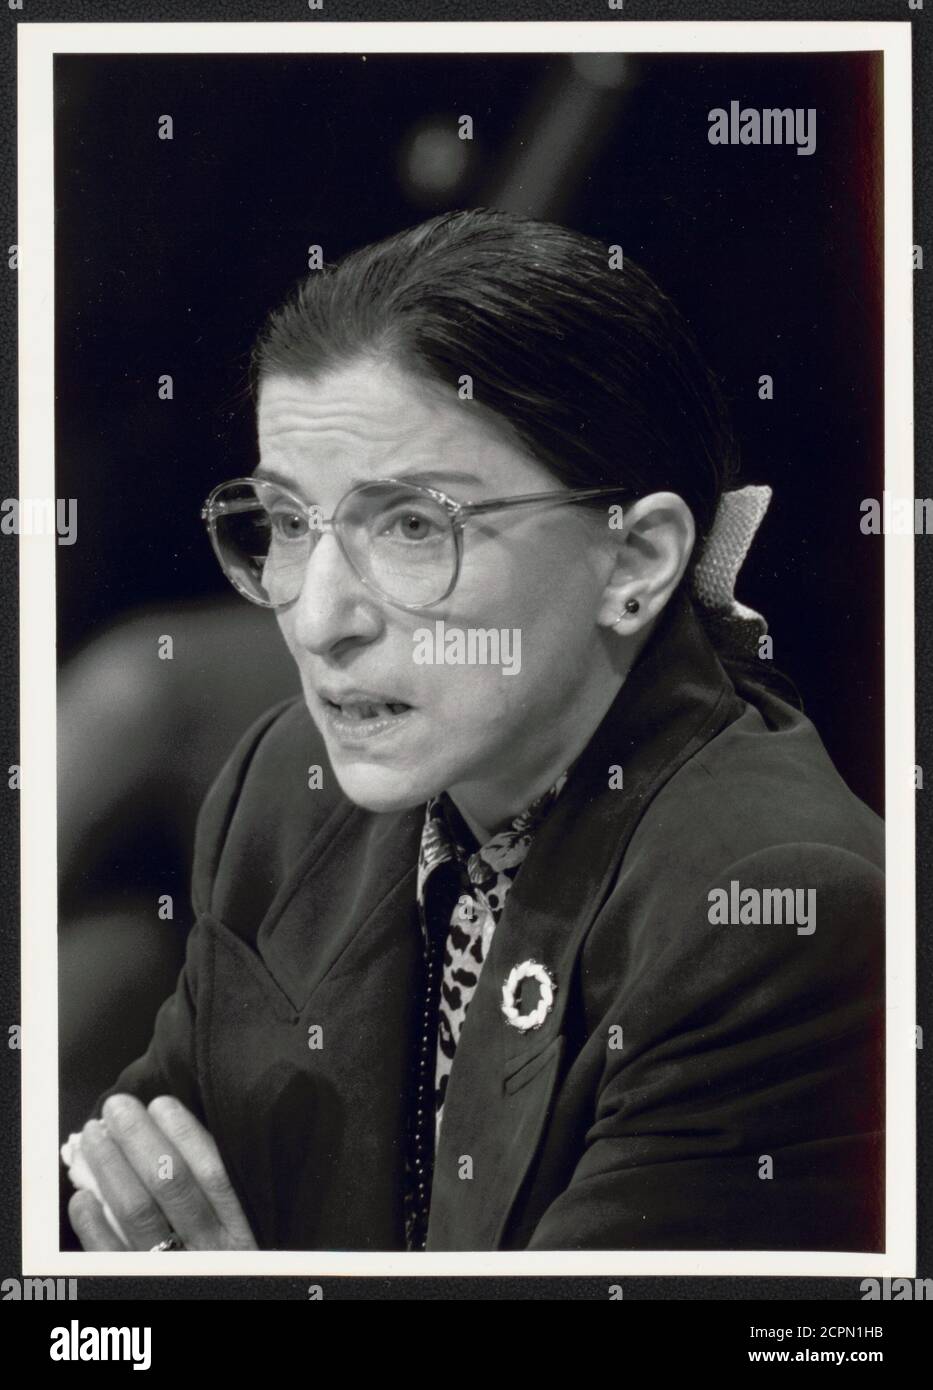 Ruth Bader Ginsburg bezeugt vor der Anhörung des Justizausschusses des US-Senats ihre Ernennung zum Obersten Gerichtshof, Washington, DC, 7/20/1993. (Foto von Michael R Jenkins/Congressional Quarterly/RBM Vintage Images) Stockfoto